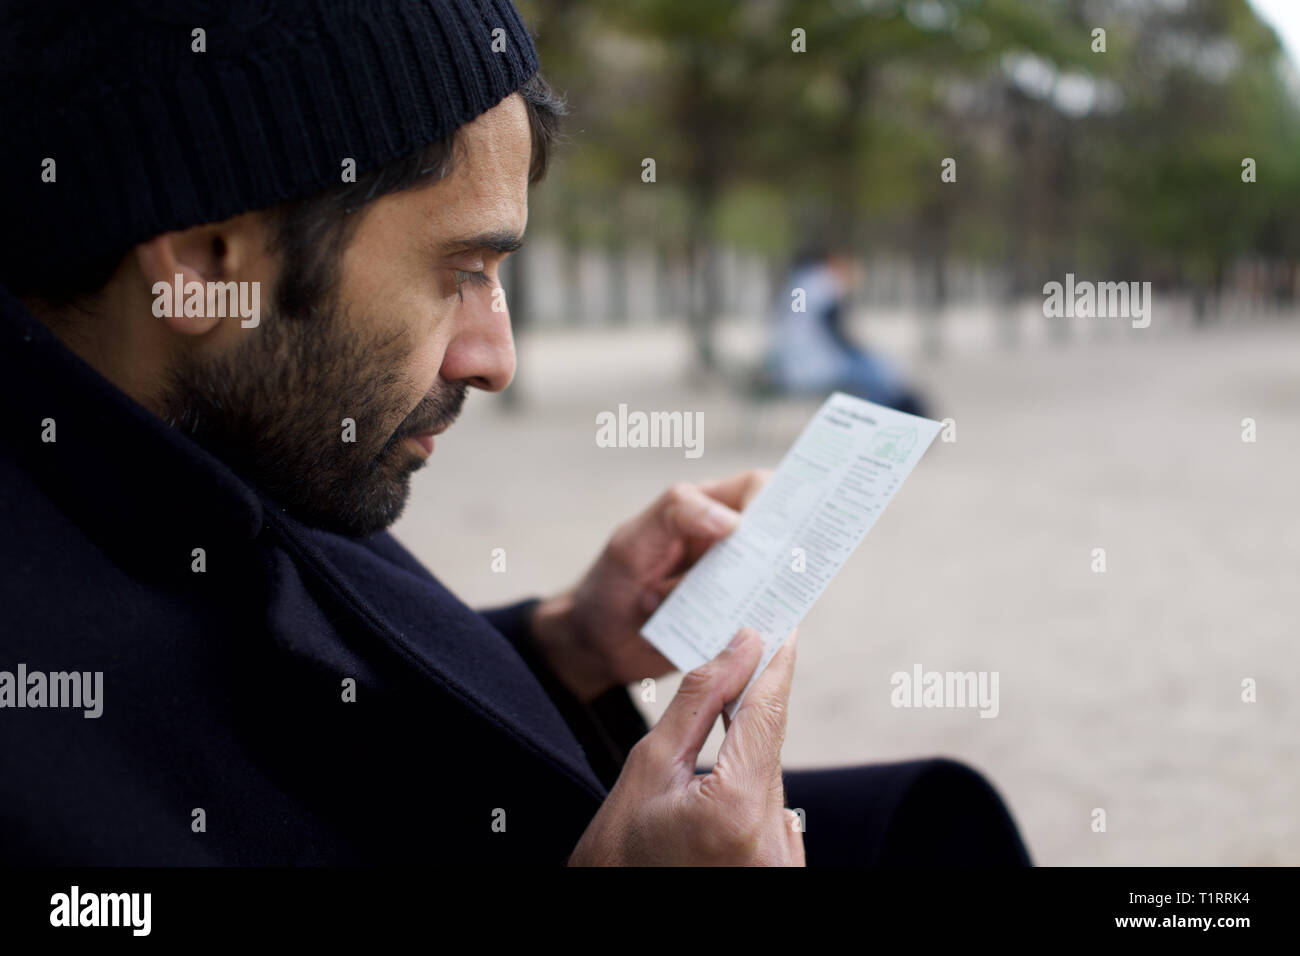 Mann der pakistanische, indische, asiatische Herkunft, im City Park sitzen, lesen Broschüre - Winter Stockfoto